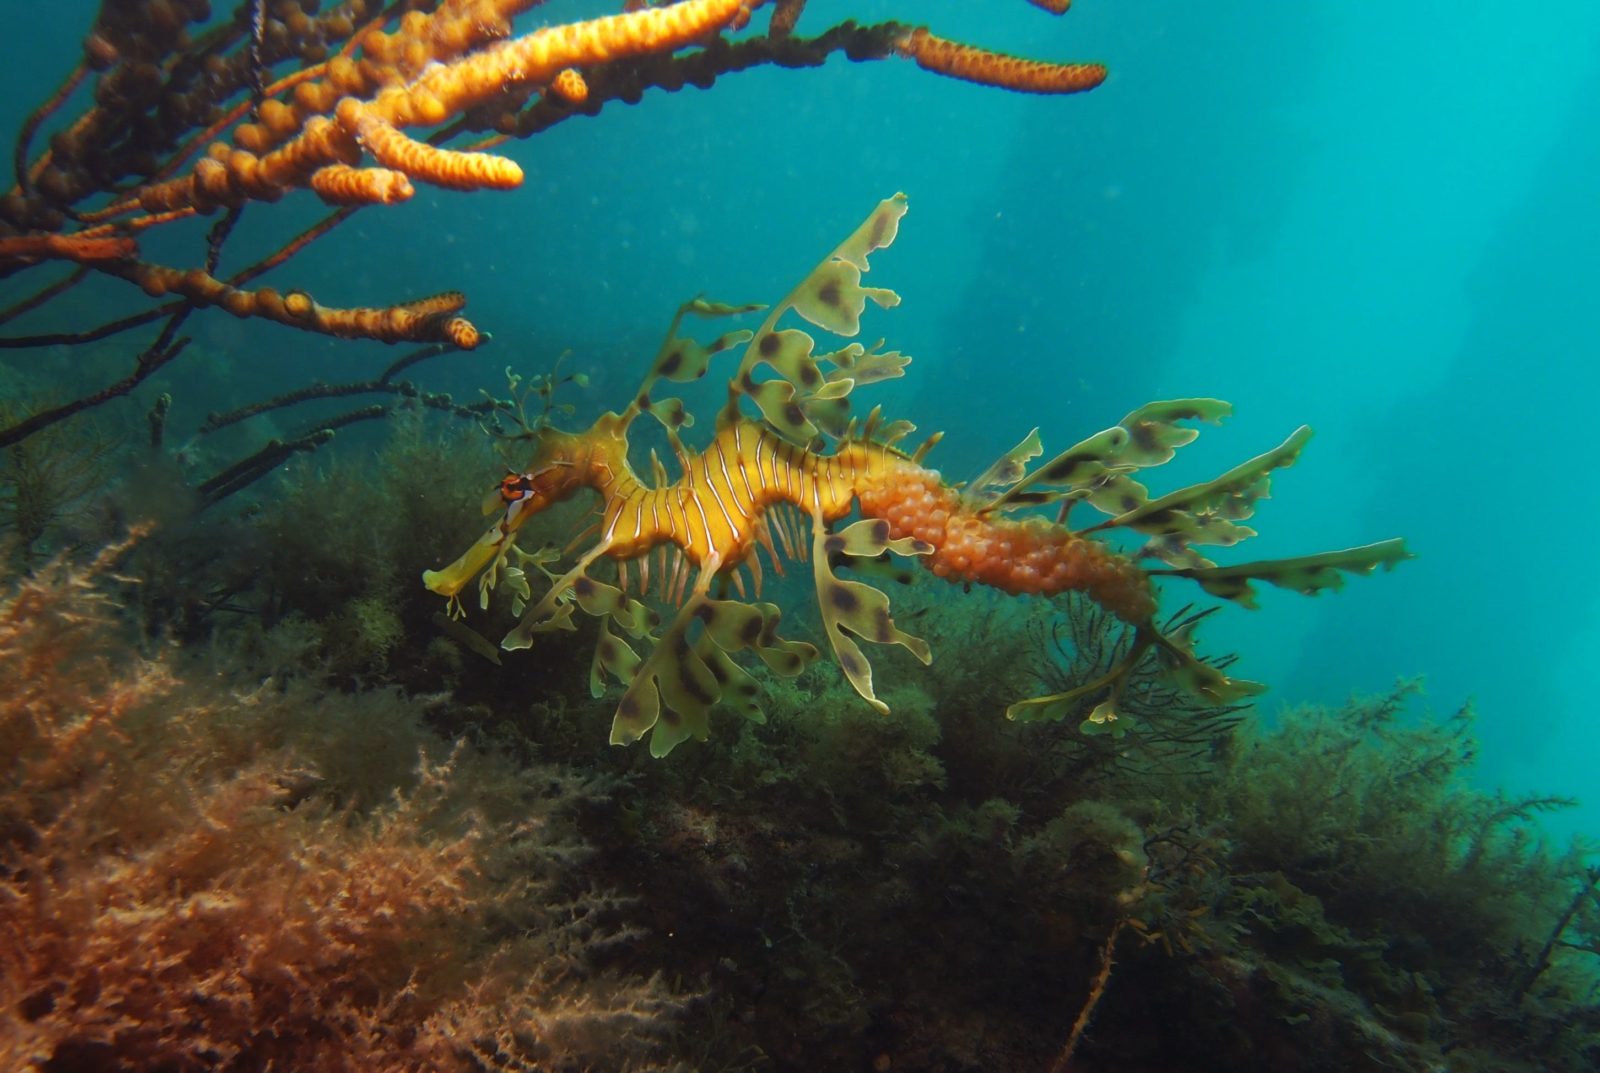 Leafy Seadragon at Rapid Bay